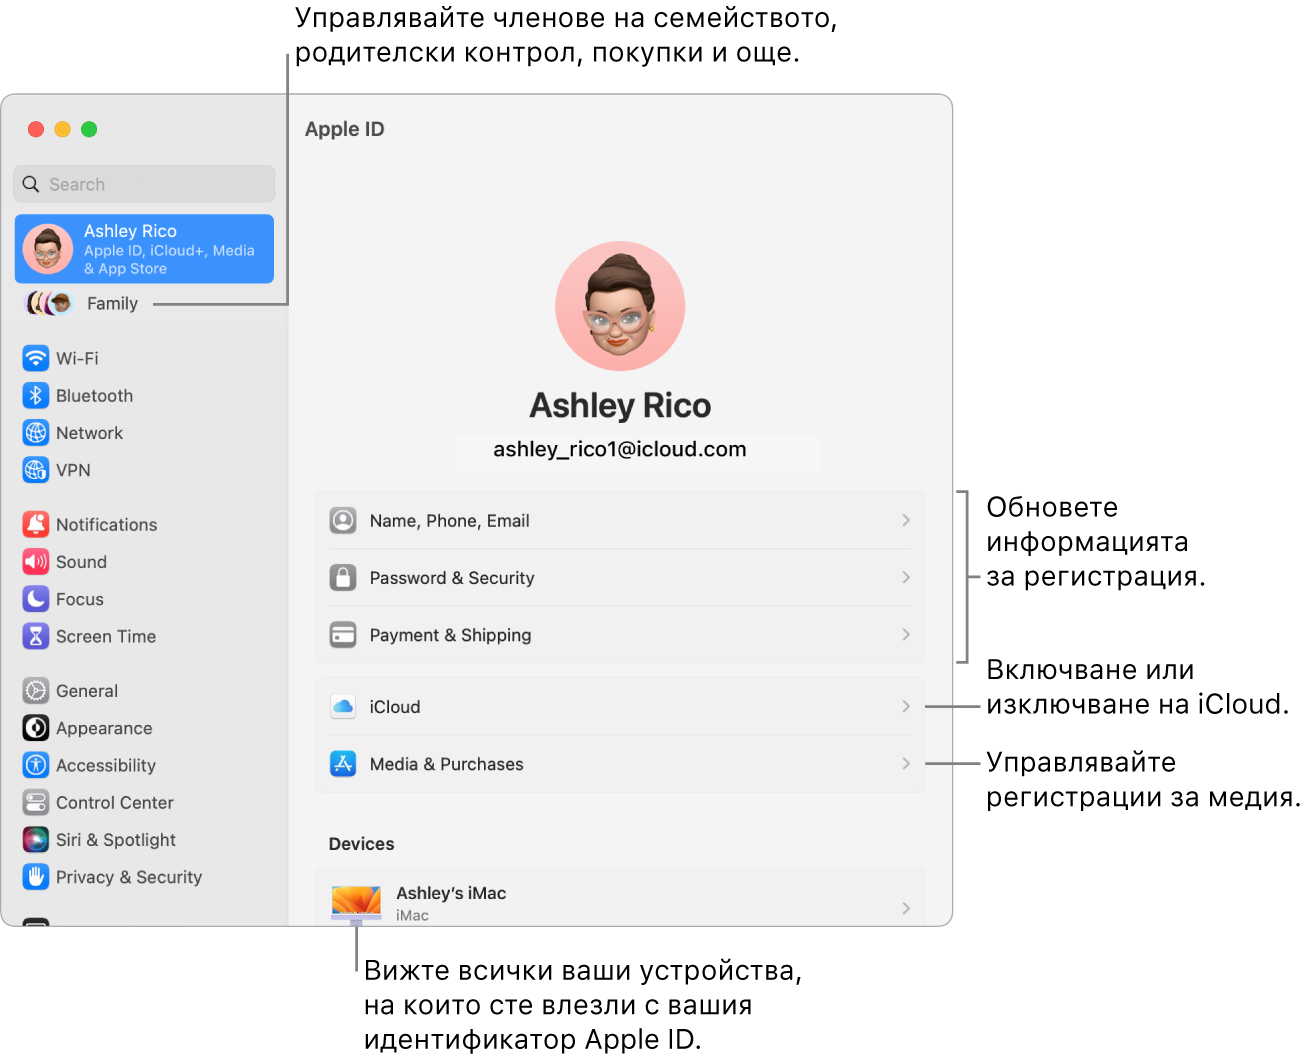 Настройките на Apple ID в System Settings (Системни настройки) с изнесени означения за обновяване на информация за регистрация, включване и изключване на функции на iCloud, управление на регистрации за медийно съдържание и Family (Семейство), от където можете да управлявате членове на семейството, родителски контрол, покупки и други.